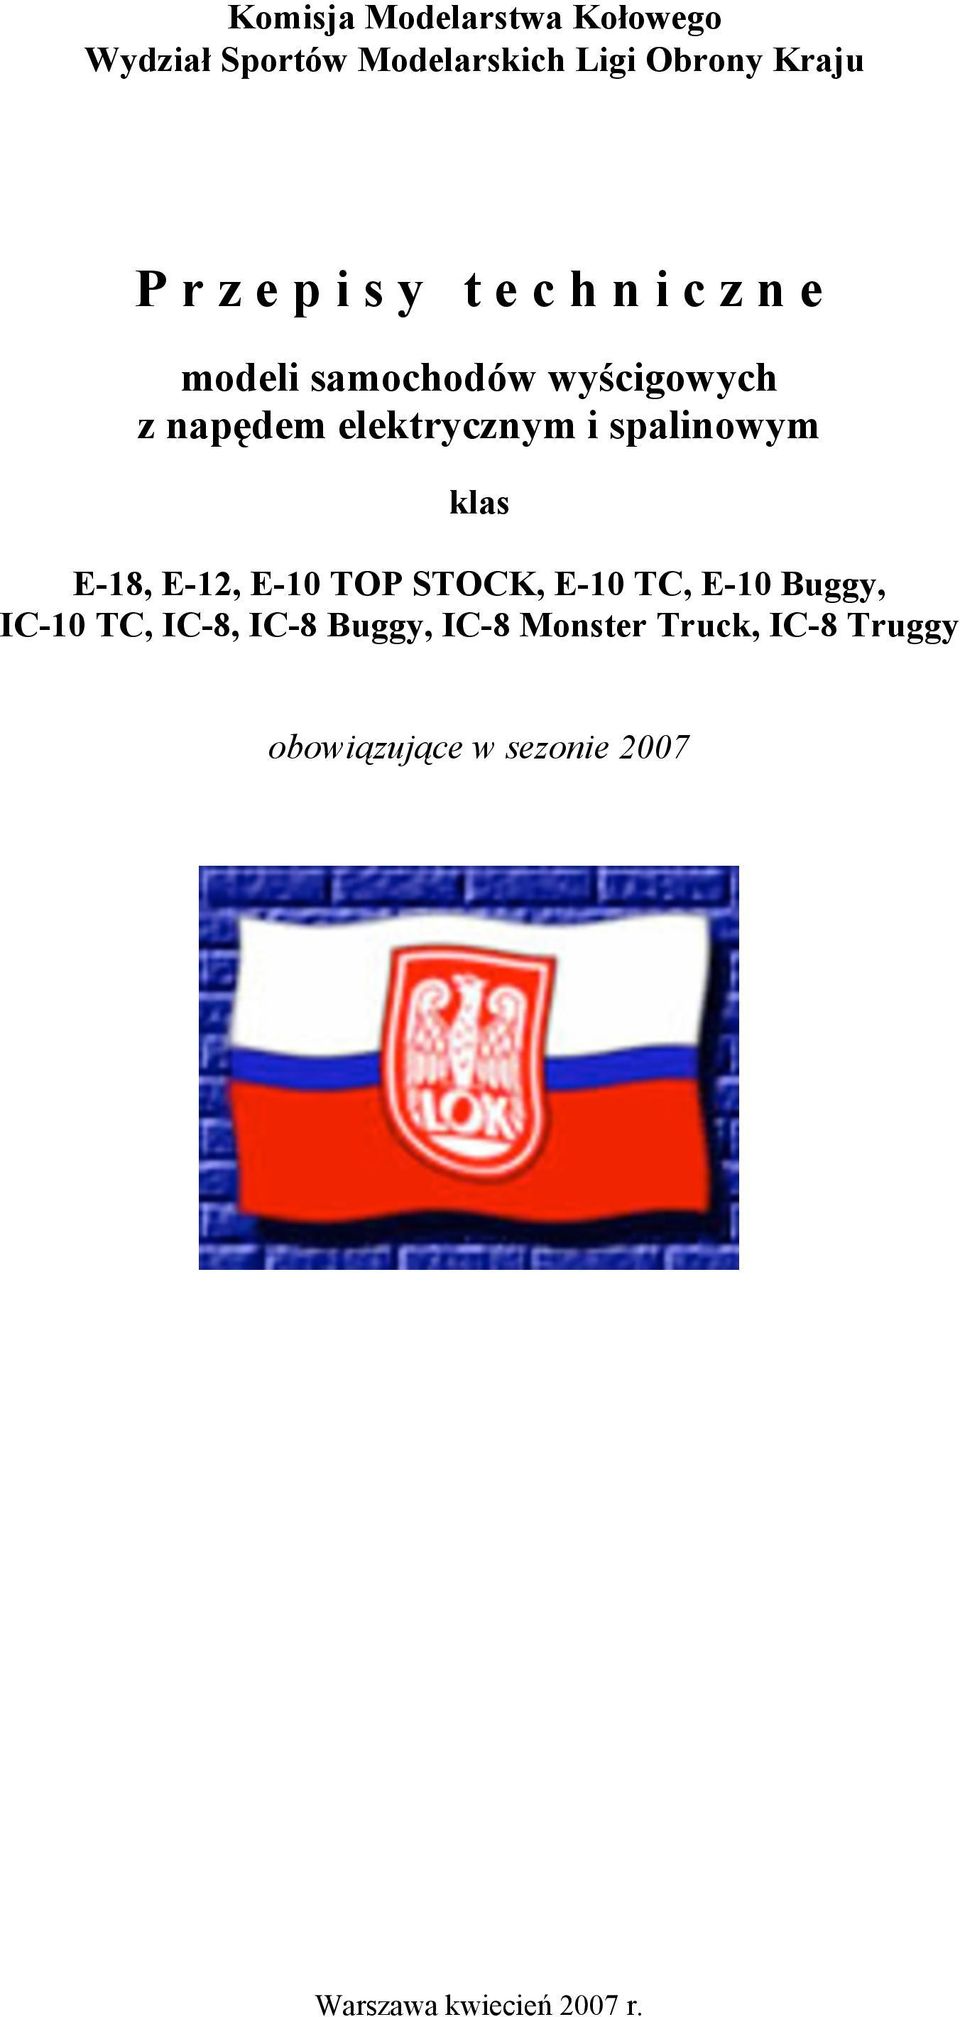 elektrycznym i spalinowym klas E-18, E-12, E-10 TOP STOCK, E-10 TC, E-10 Buggy,